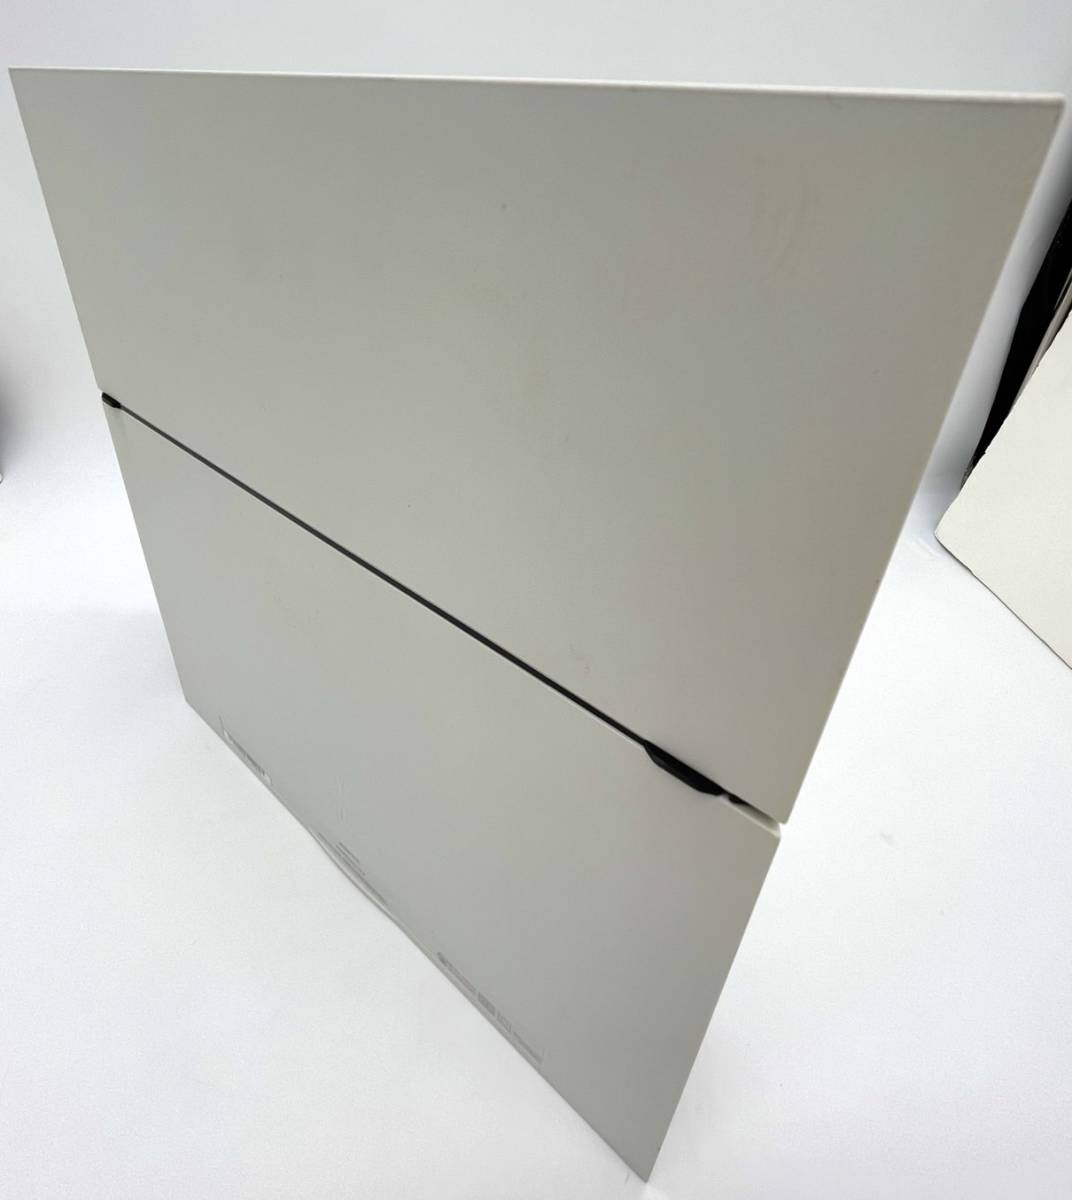 PlayStation 4 グレイシャー・ホワイト (CUH-1200AB02)【メーカー生産終了】【極美品】